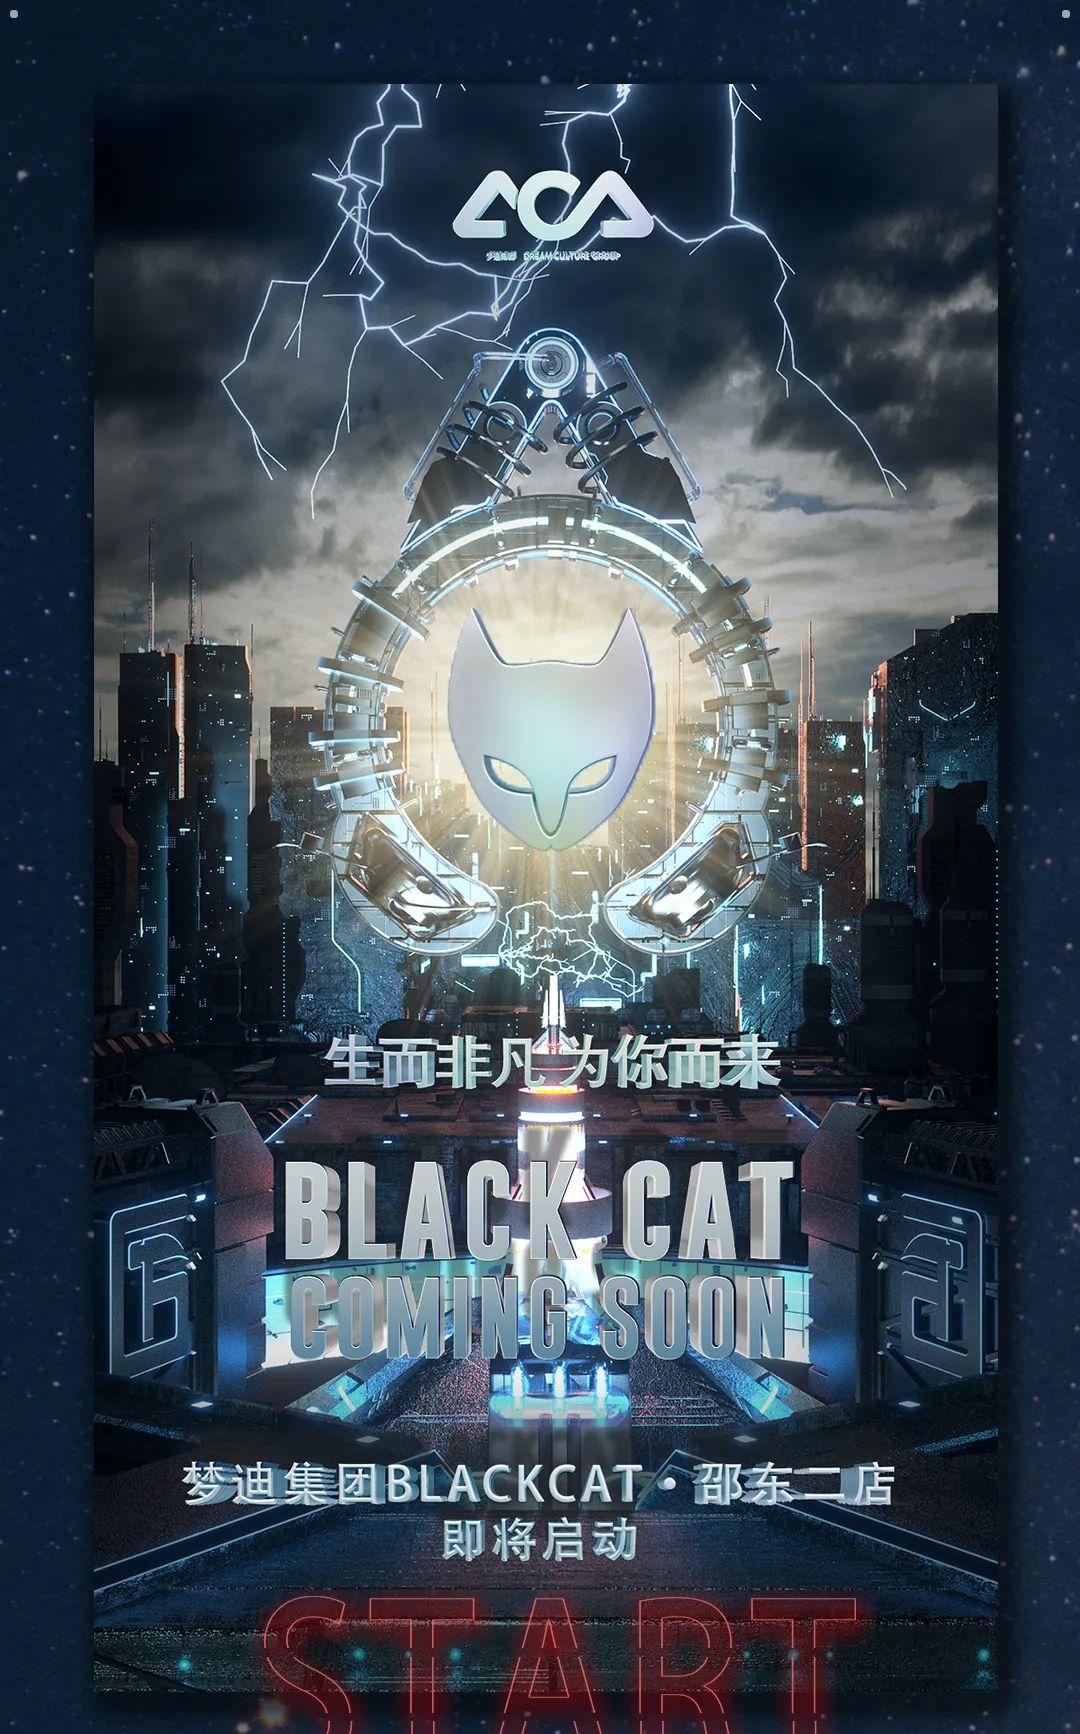 梦迪集团BLACK CAT开启2.0时代，敬请期待-邵东邵东黑猫酒吧/BLACK CAT